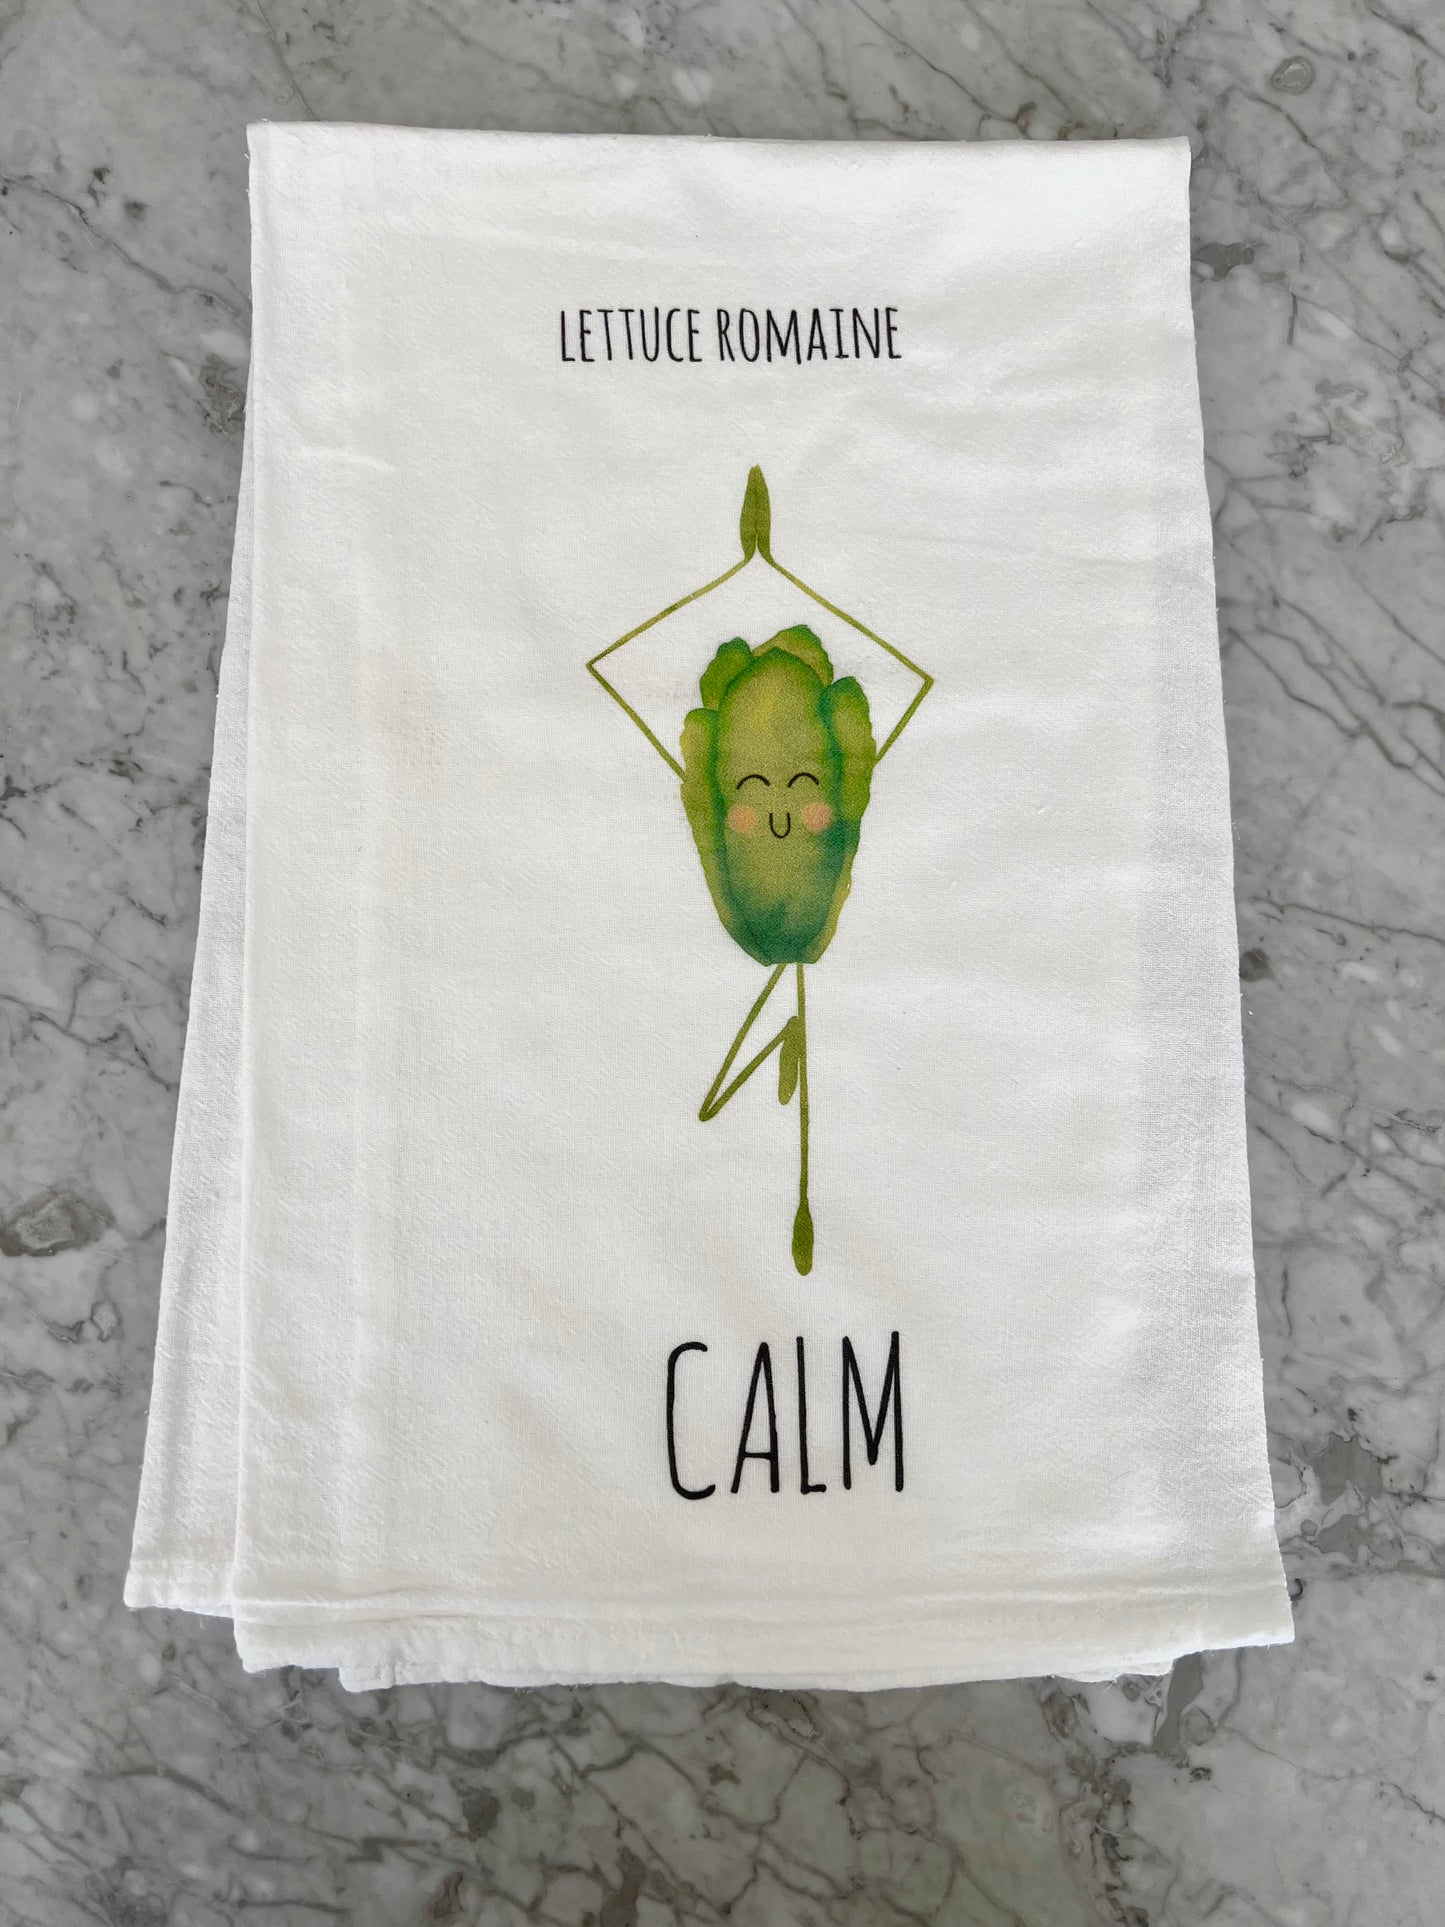 Lettuce Romaine Calm